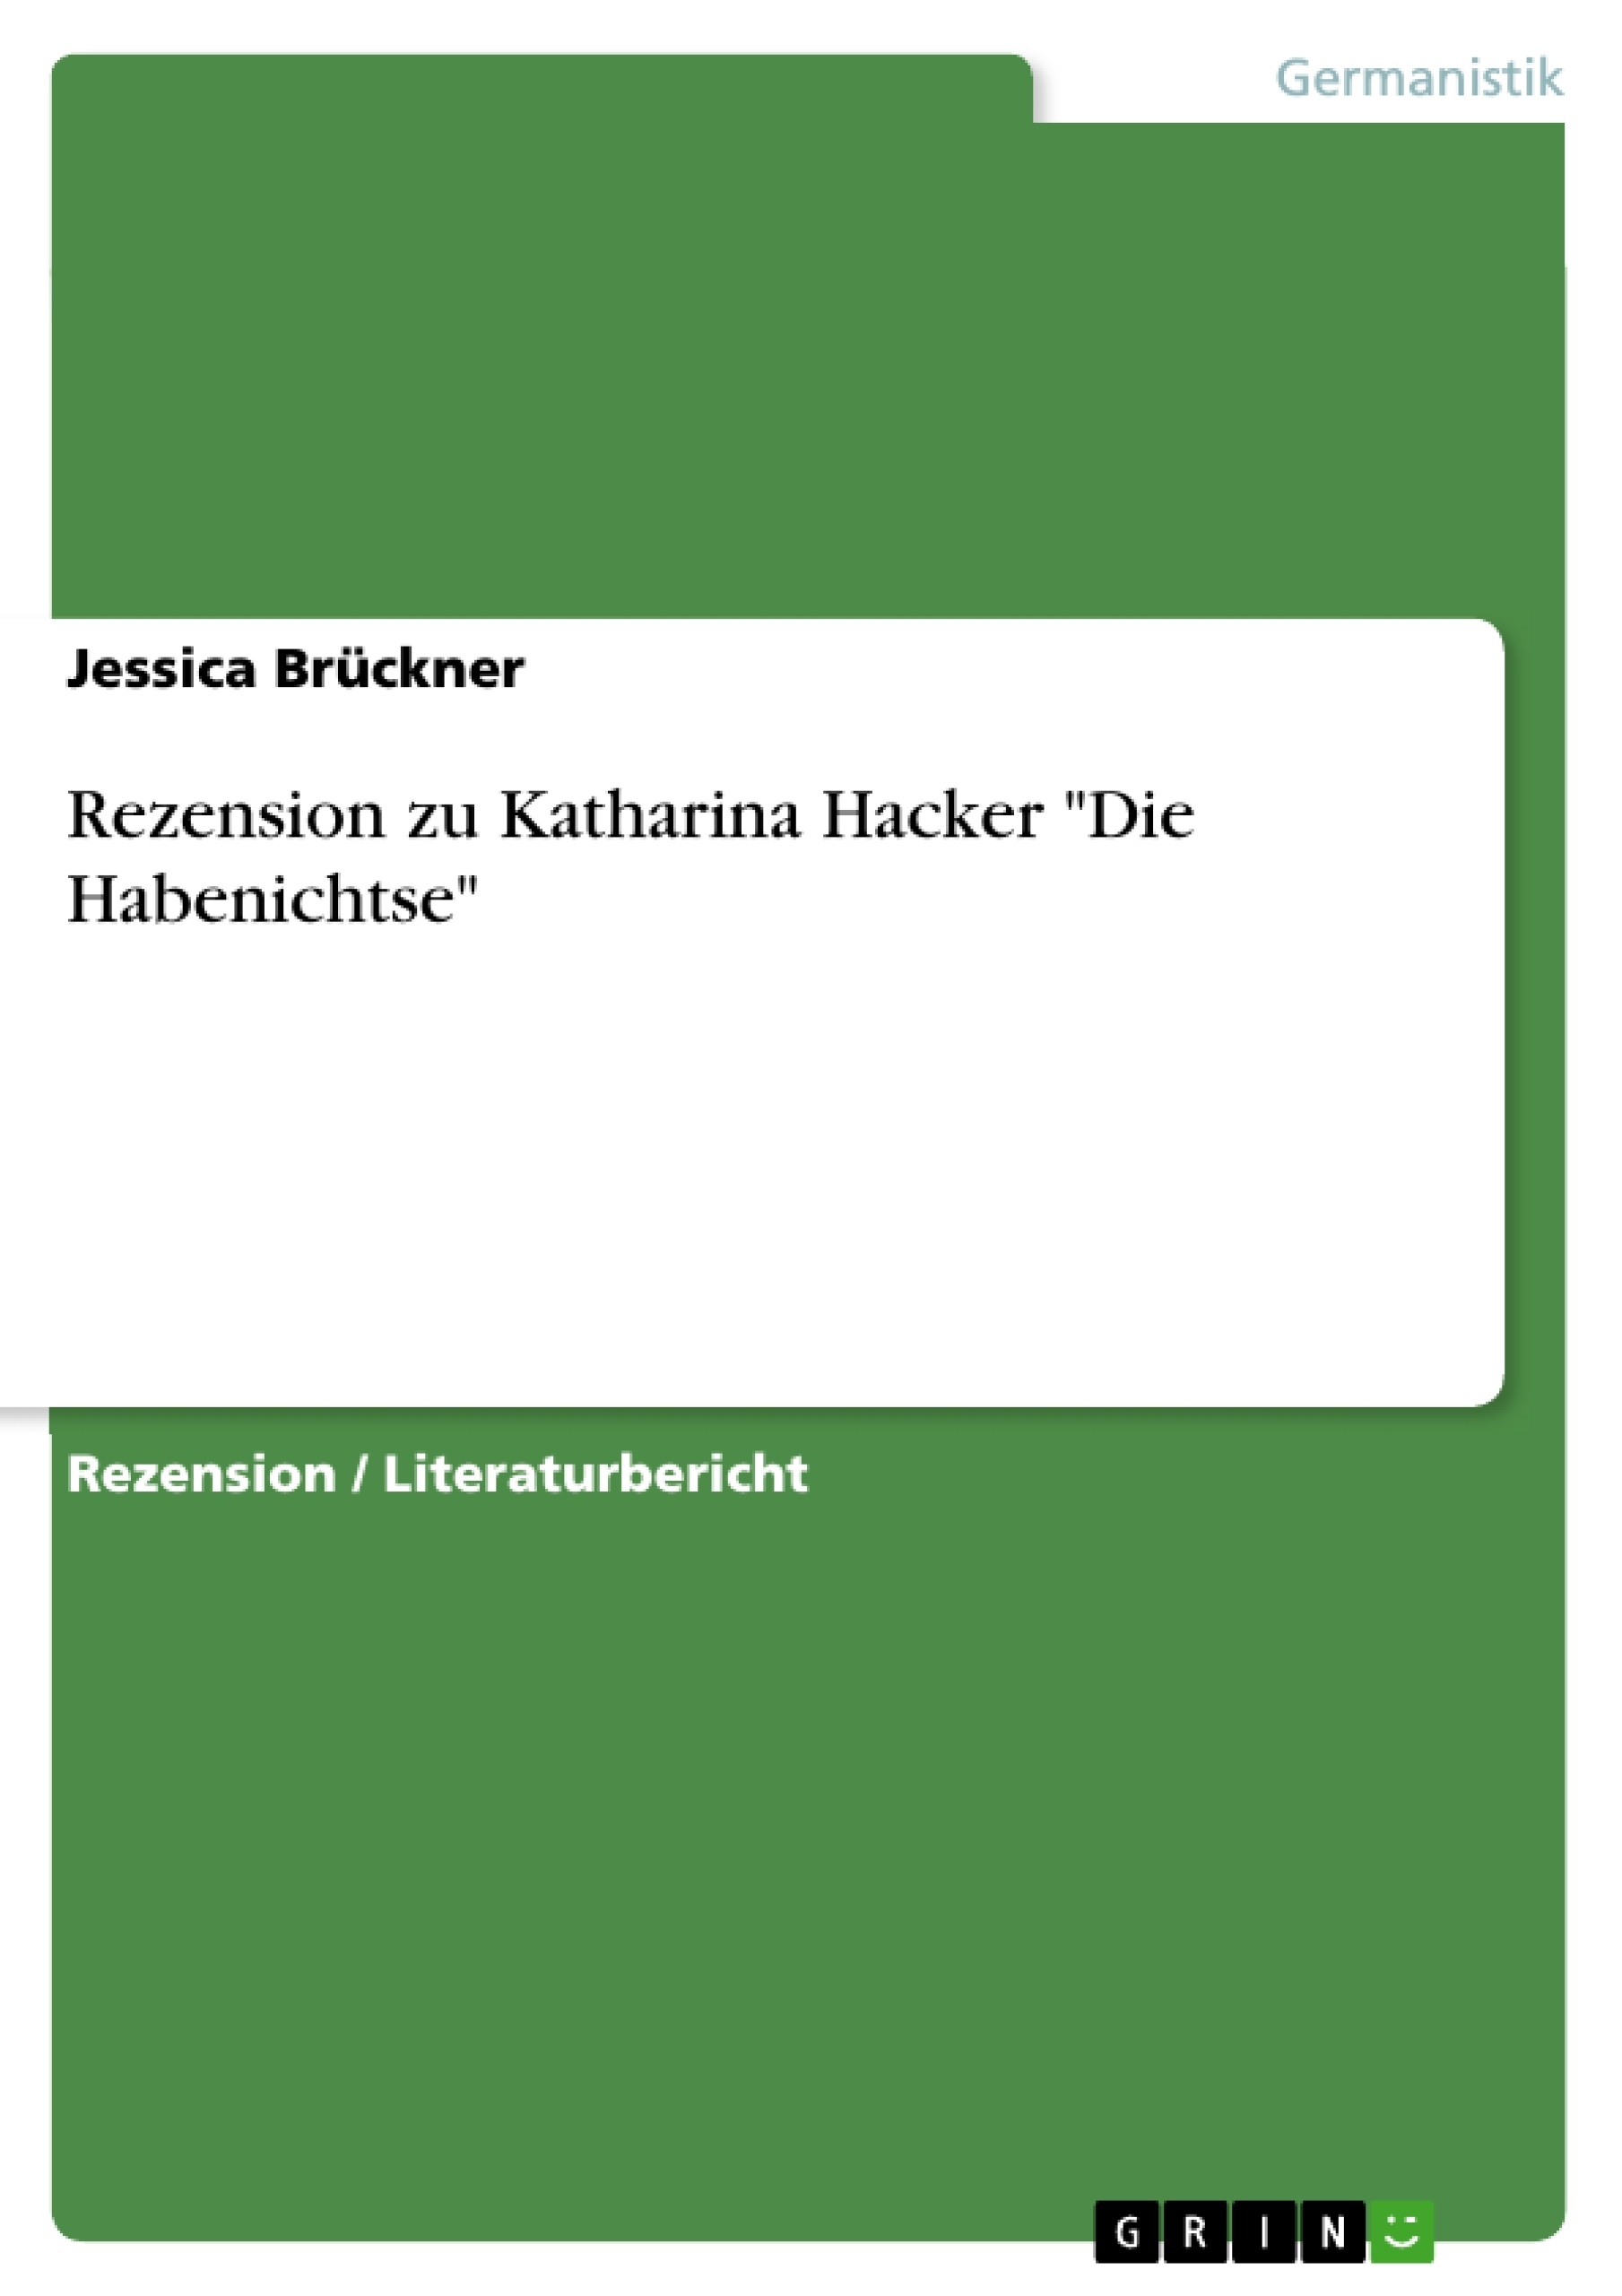 Título: Rezension zu Katharina Hacker "Die Habenichtse"